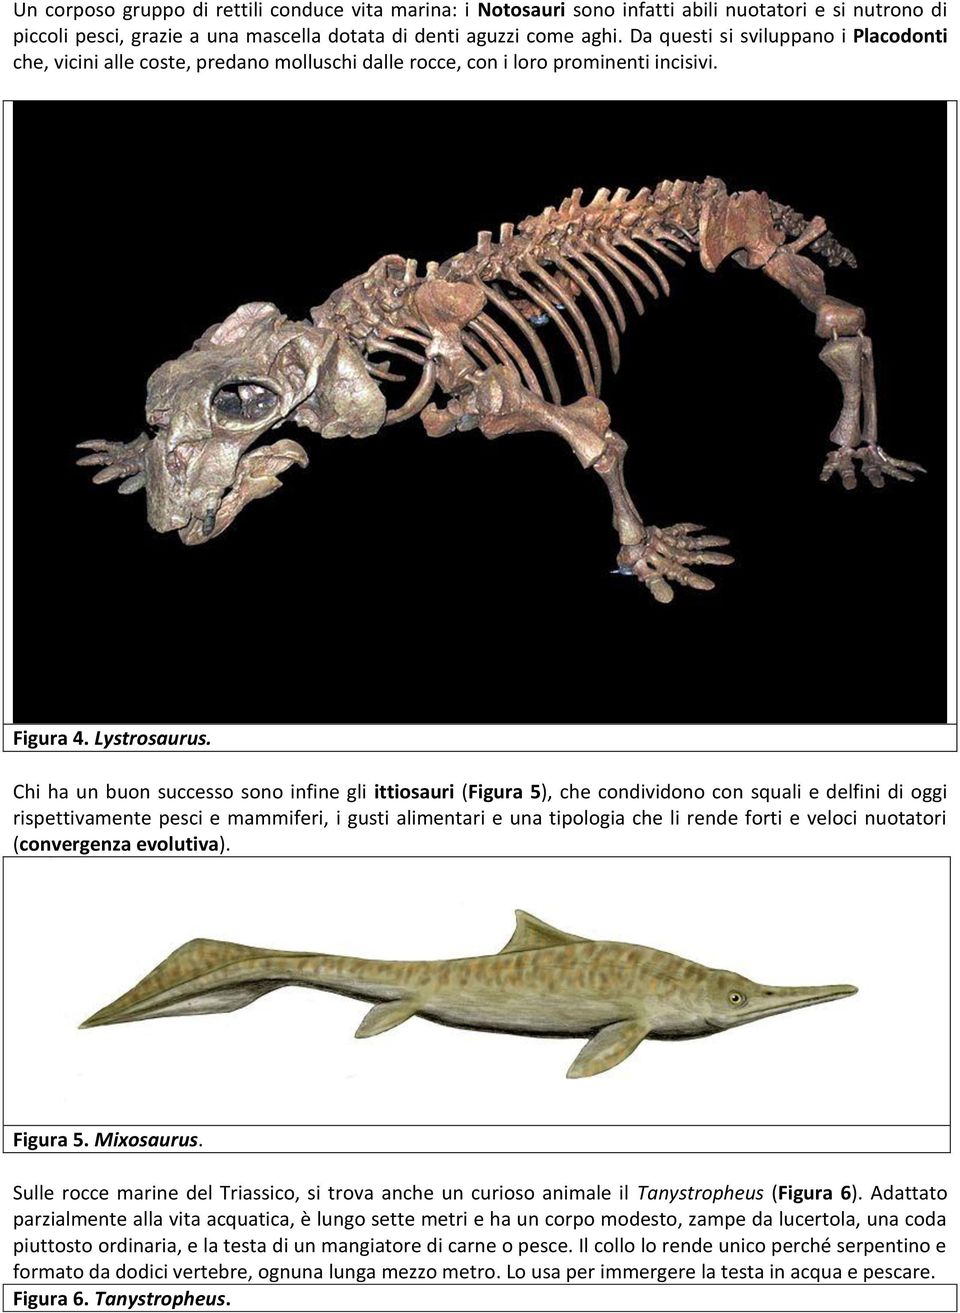 Chi ha un buon successo sono infine gli ittiosauri (Figura 5), che condividono con squali e delfini di oggi rispettivamente pesci e mammiferi, i gusti alimentari e una tipologia che li rende forti e